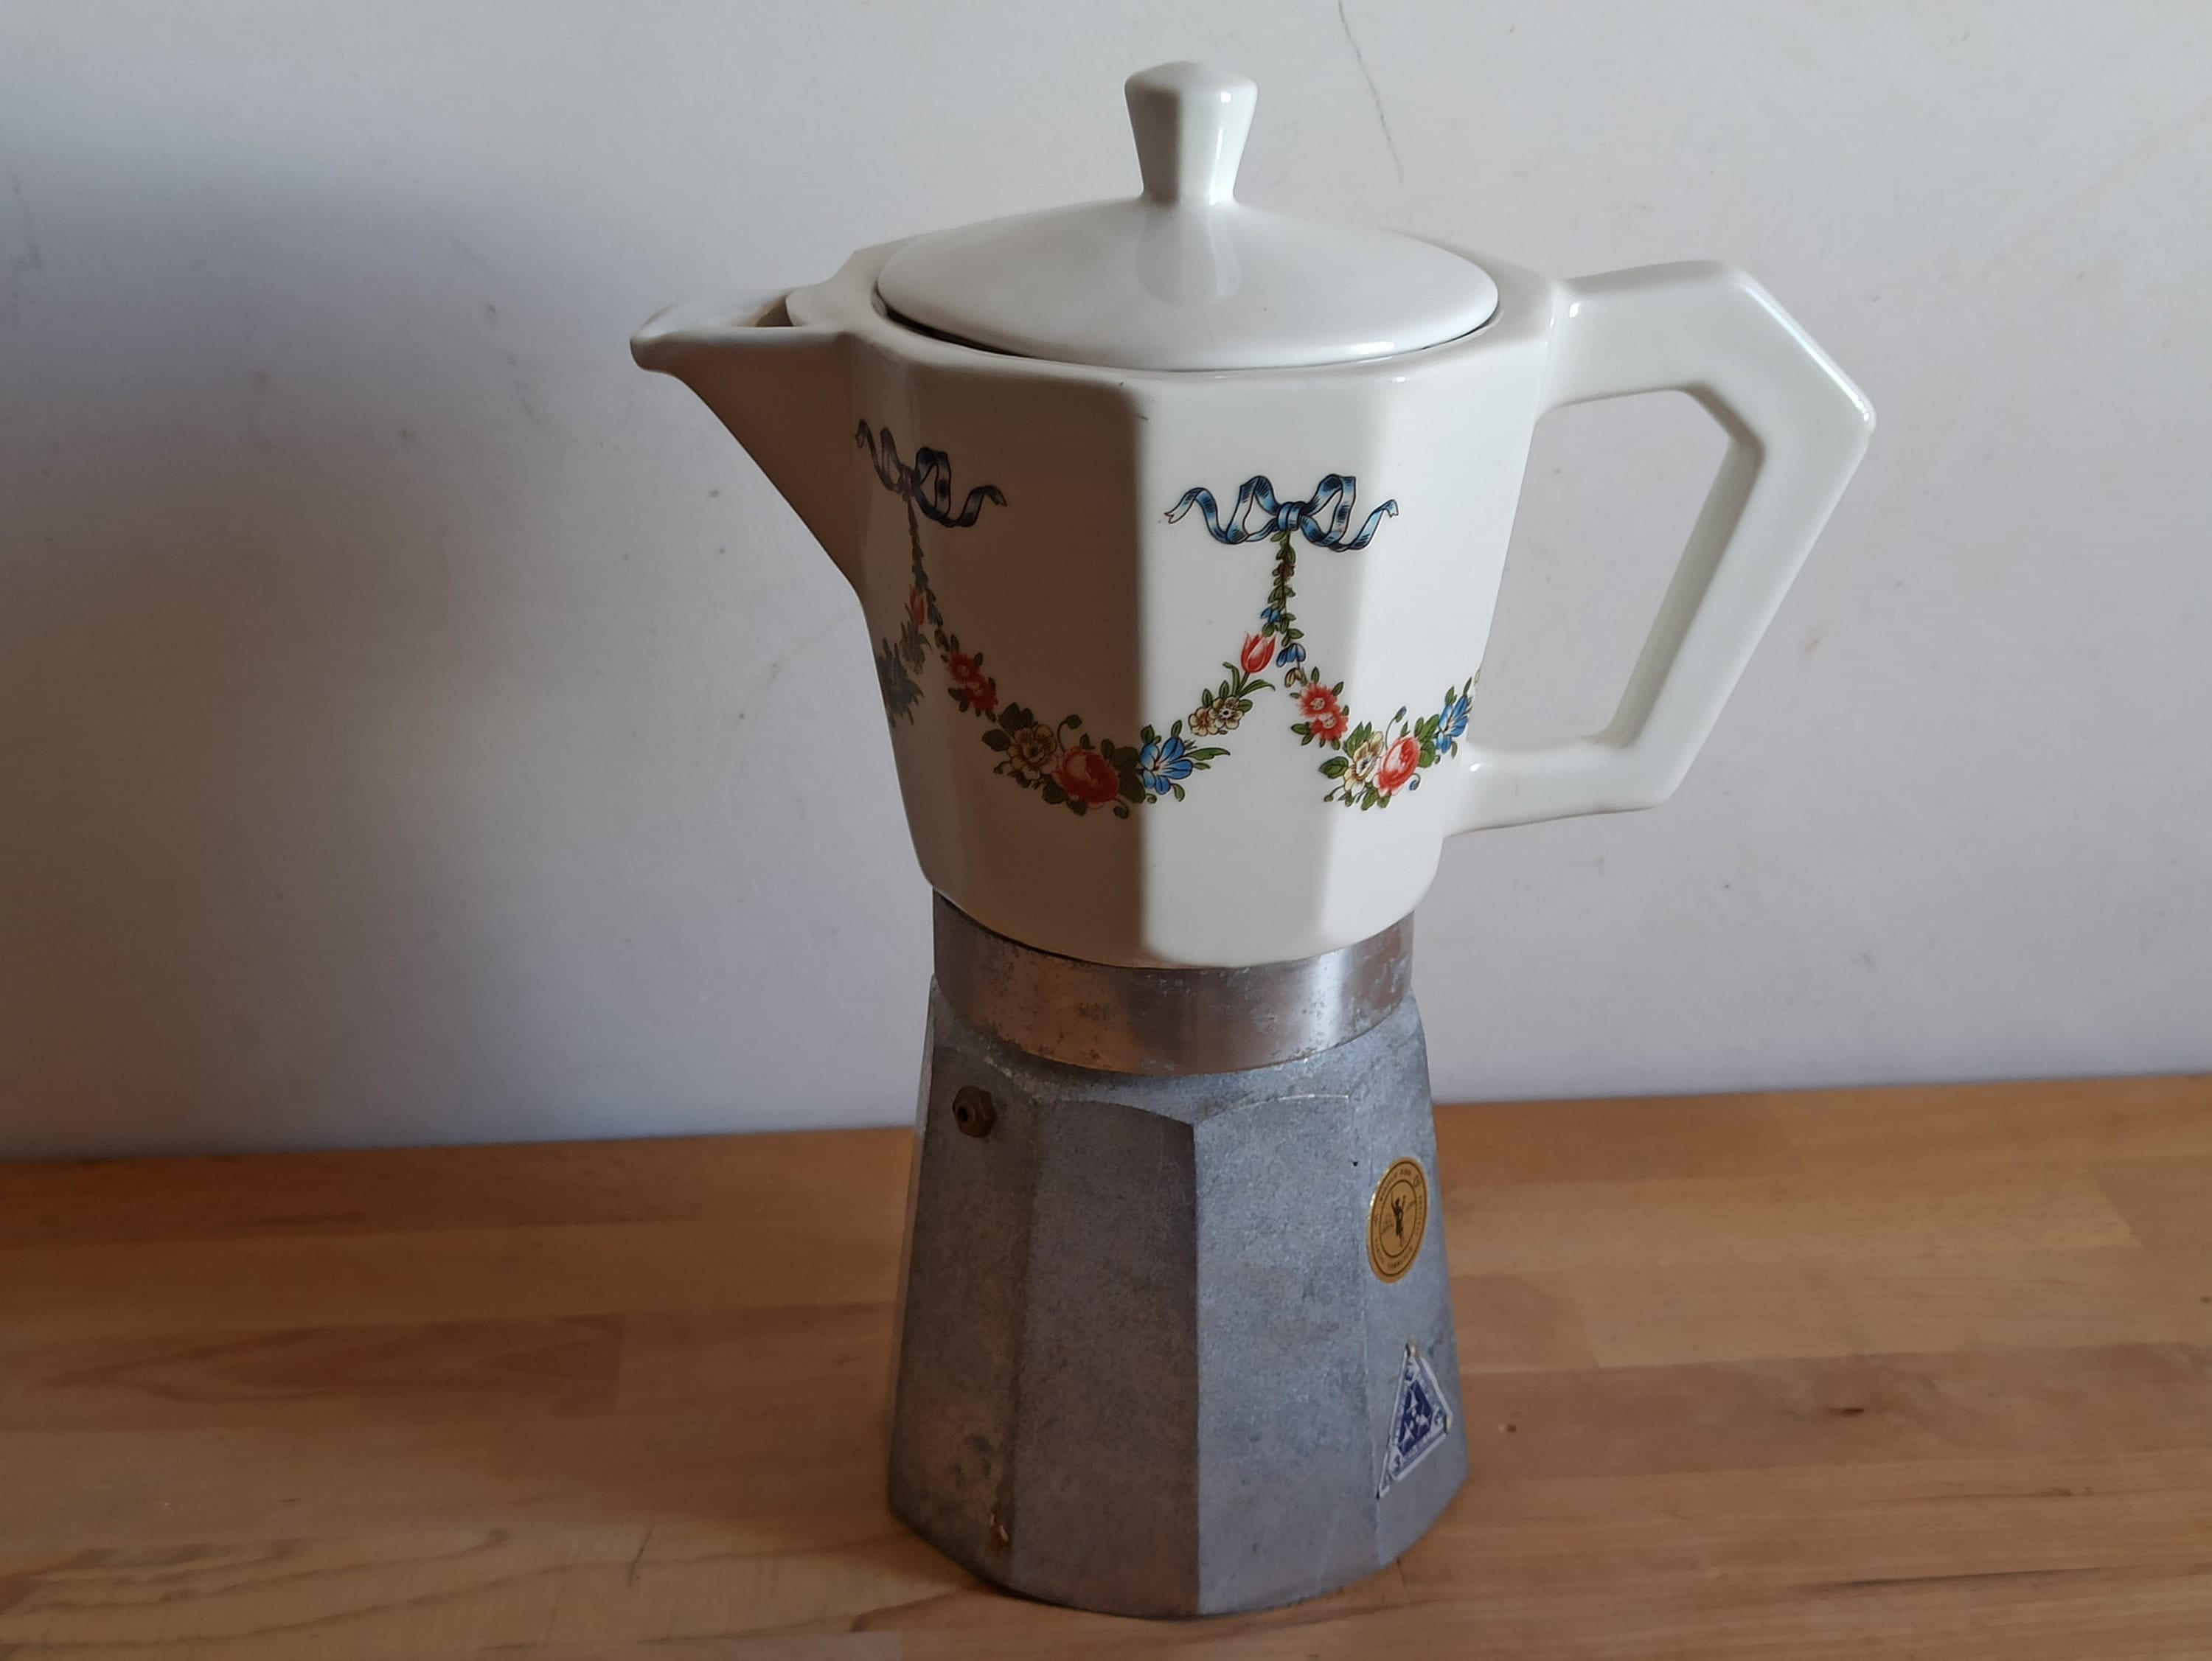 XXL Vintage Stovetop Moka Pot With Ceramic Top, Italian Espresso